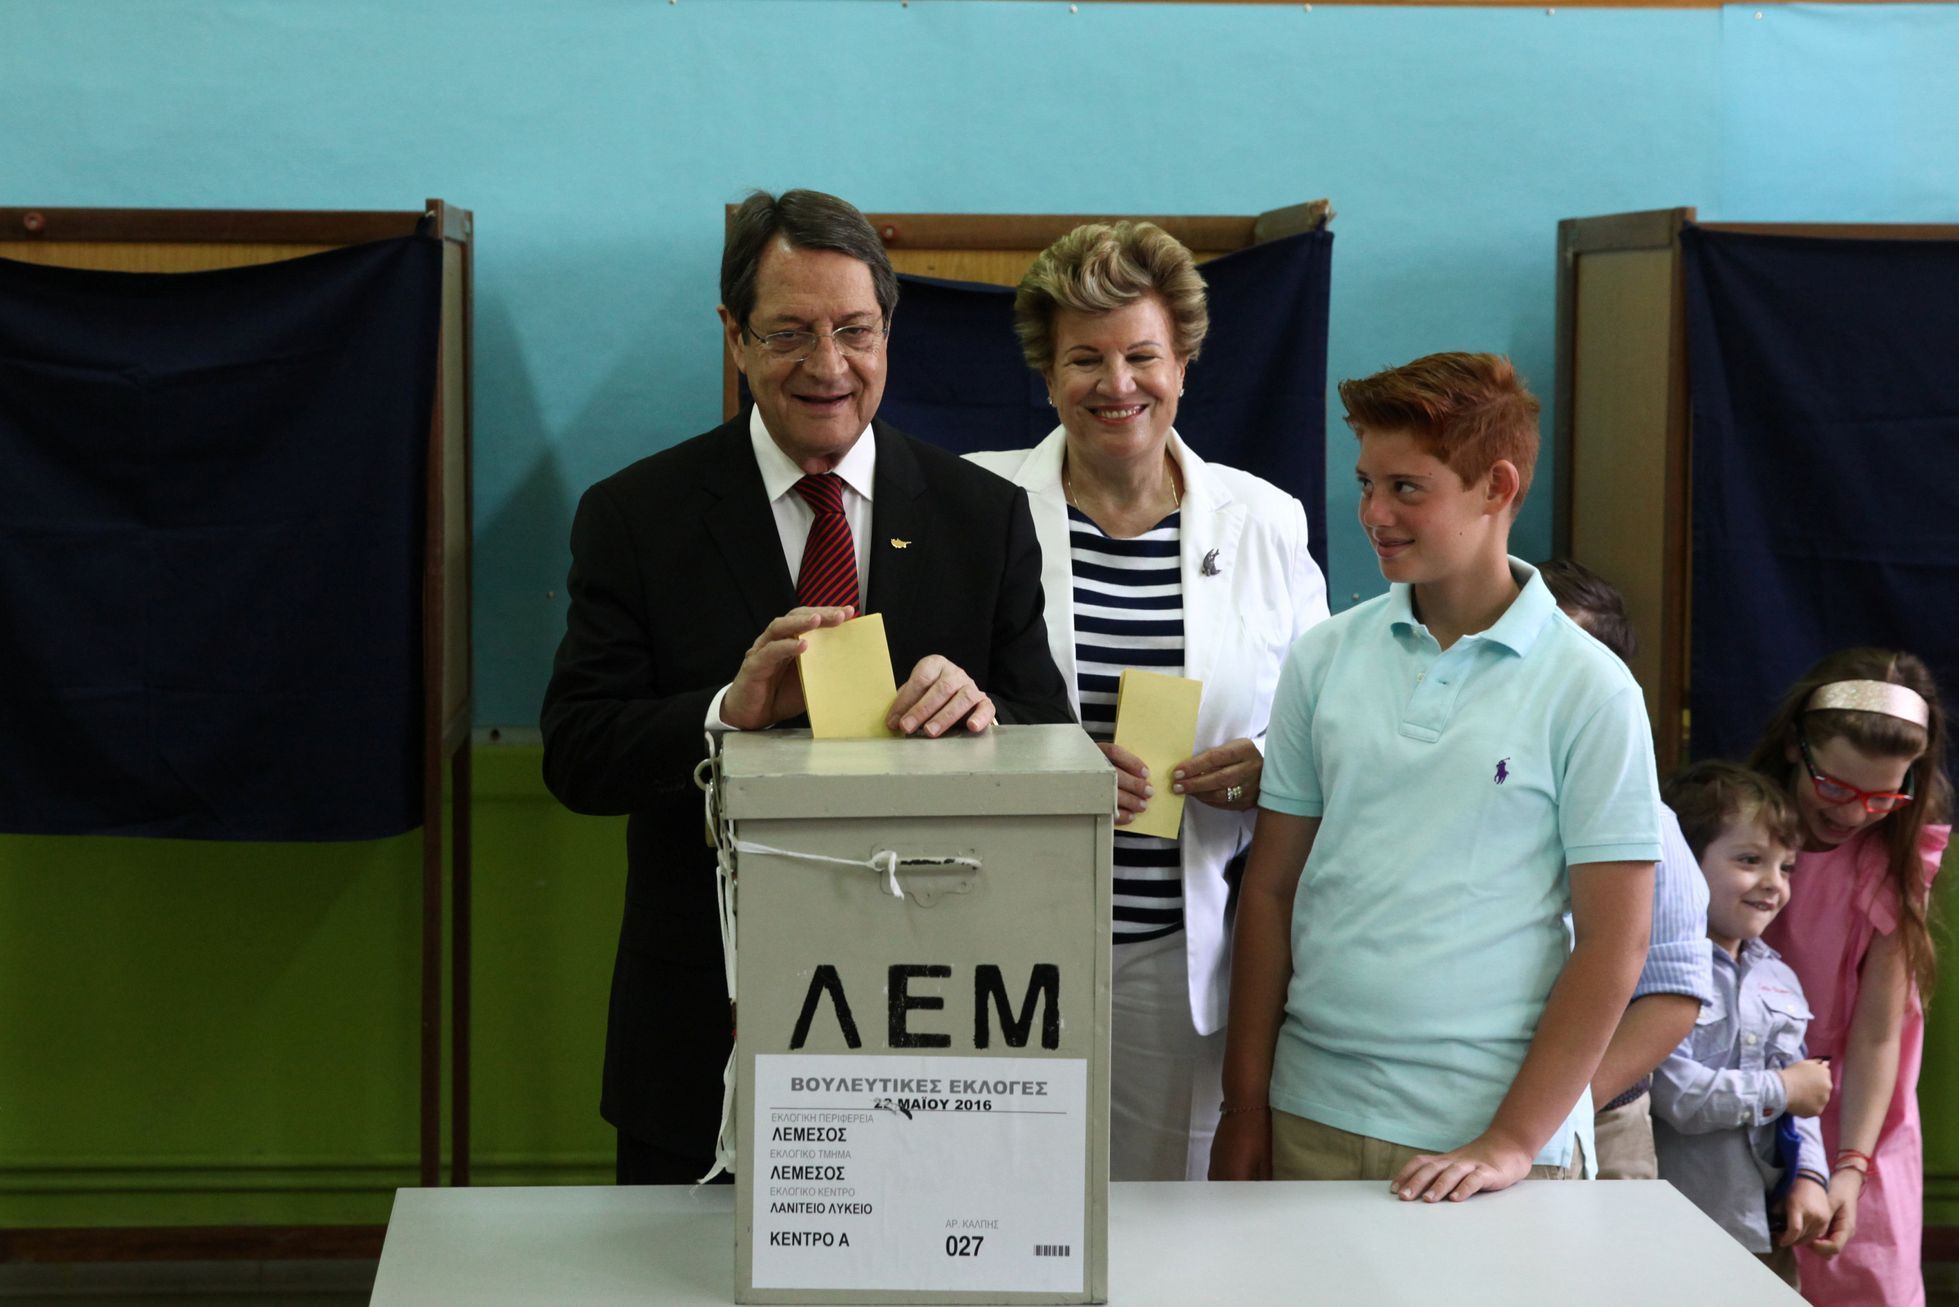 Kyperský prezident Nicos Anastasiades během parlamentních voleb.